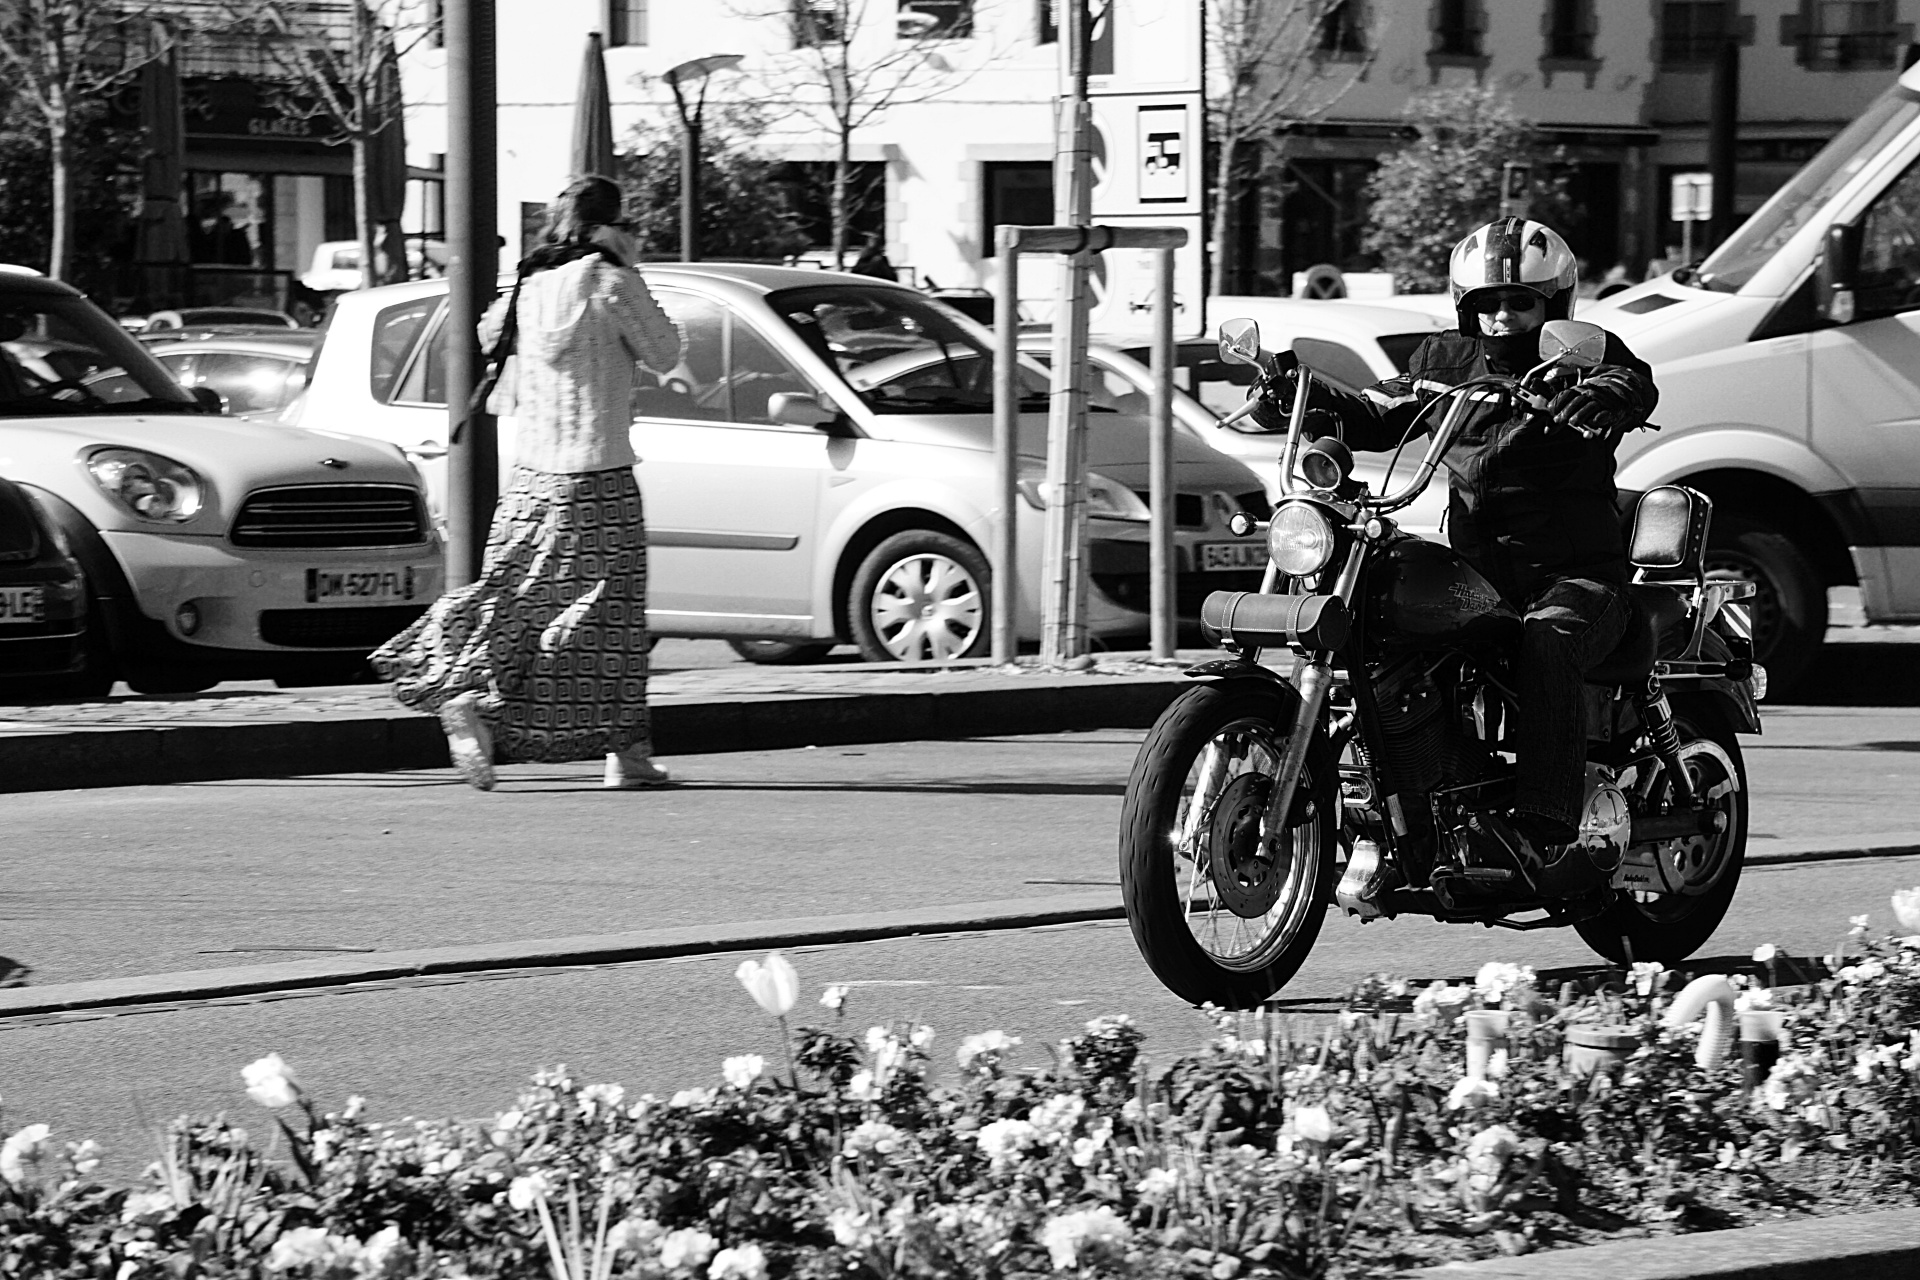 biker city two wheels free photo